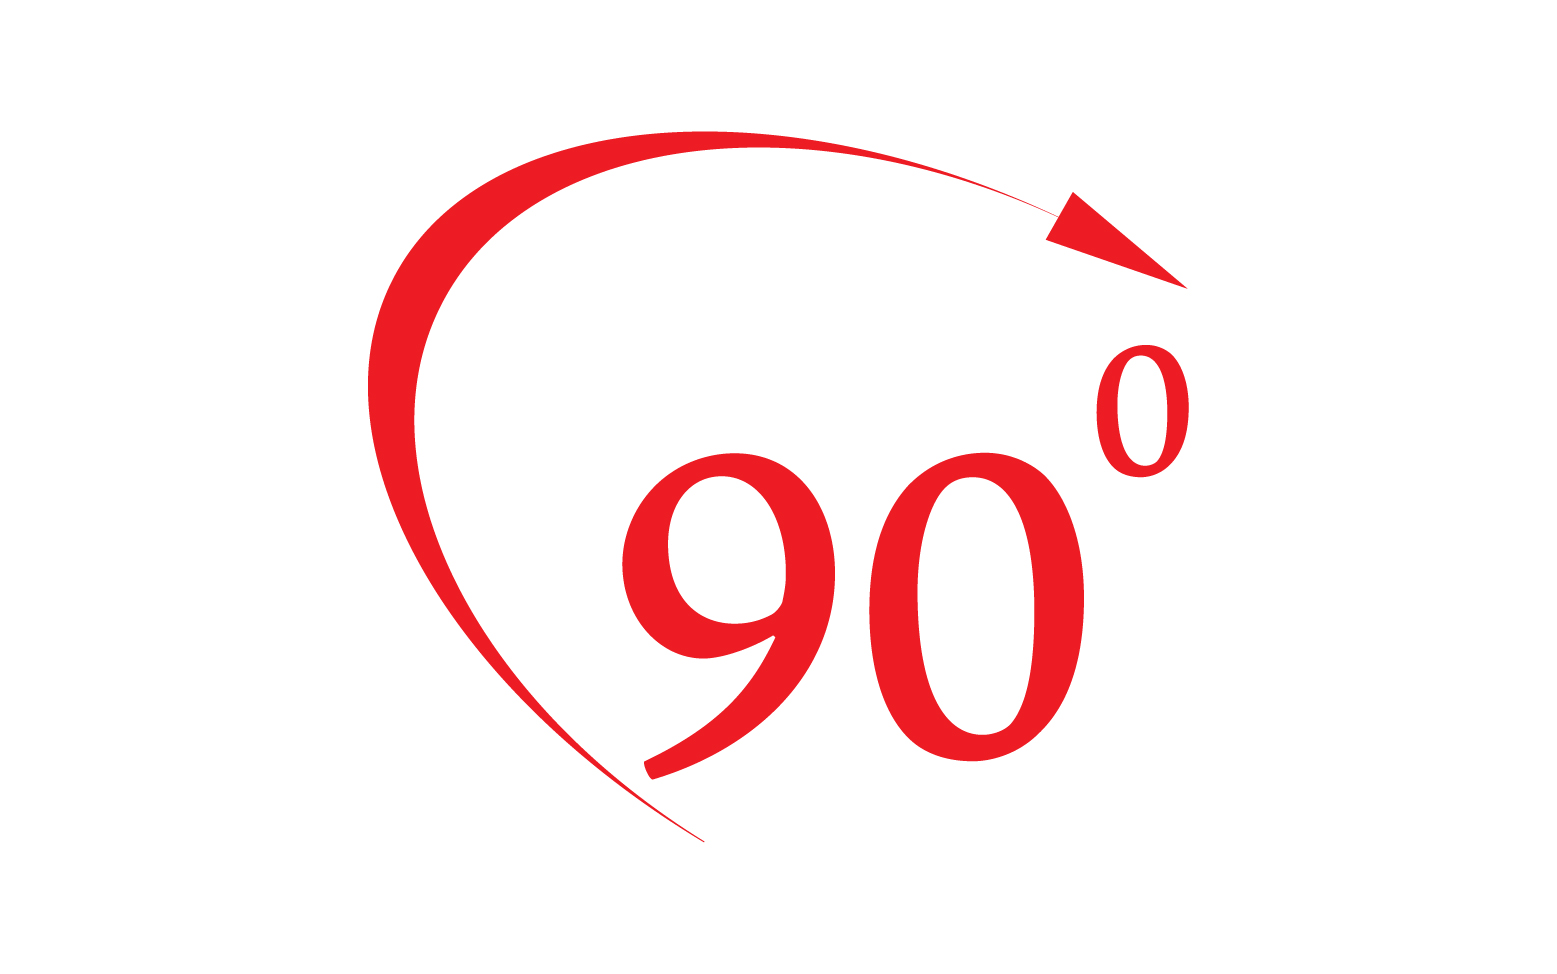 90 degree angle rotation icon symbol logo v50